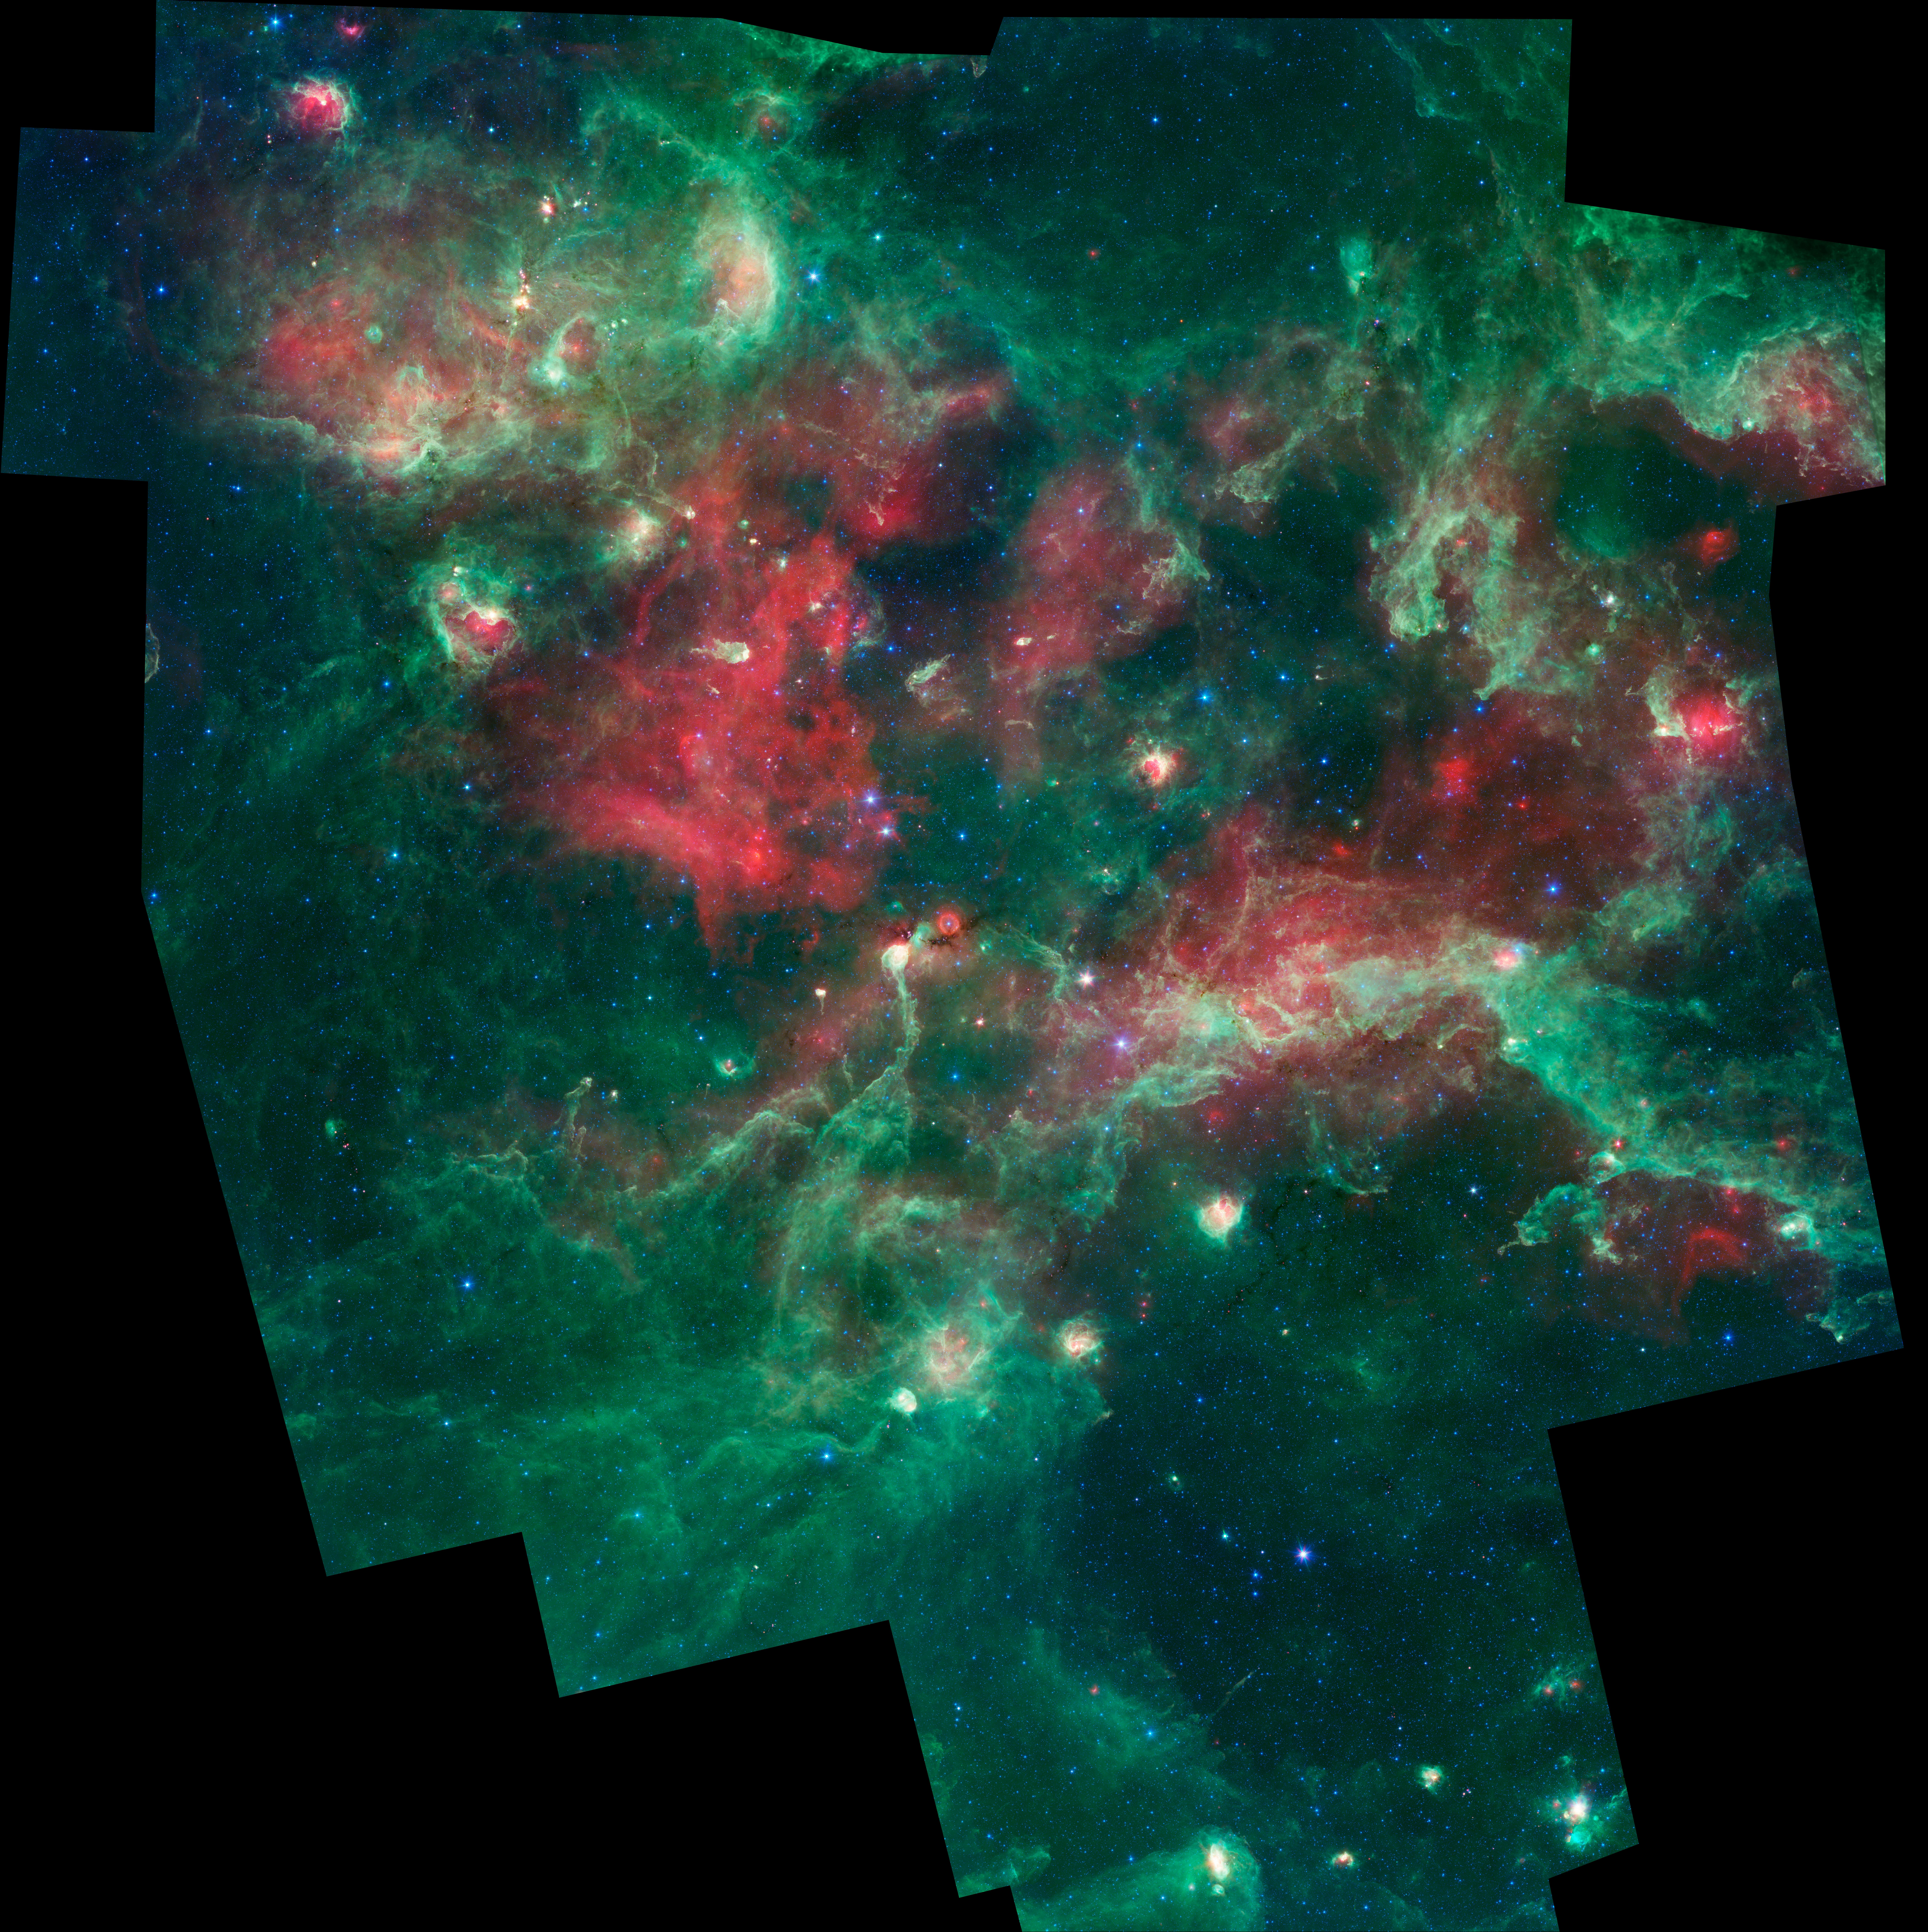 PIA15253: Stars Brewing in Cygnus X